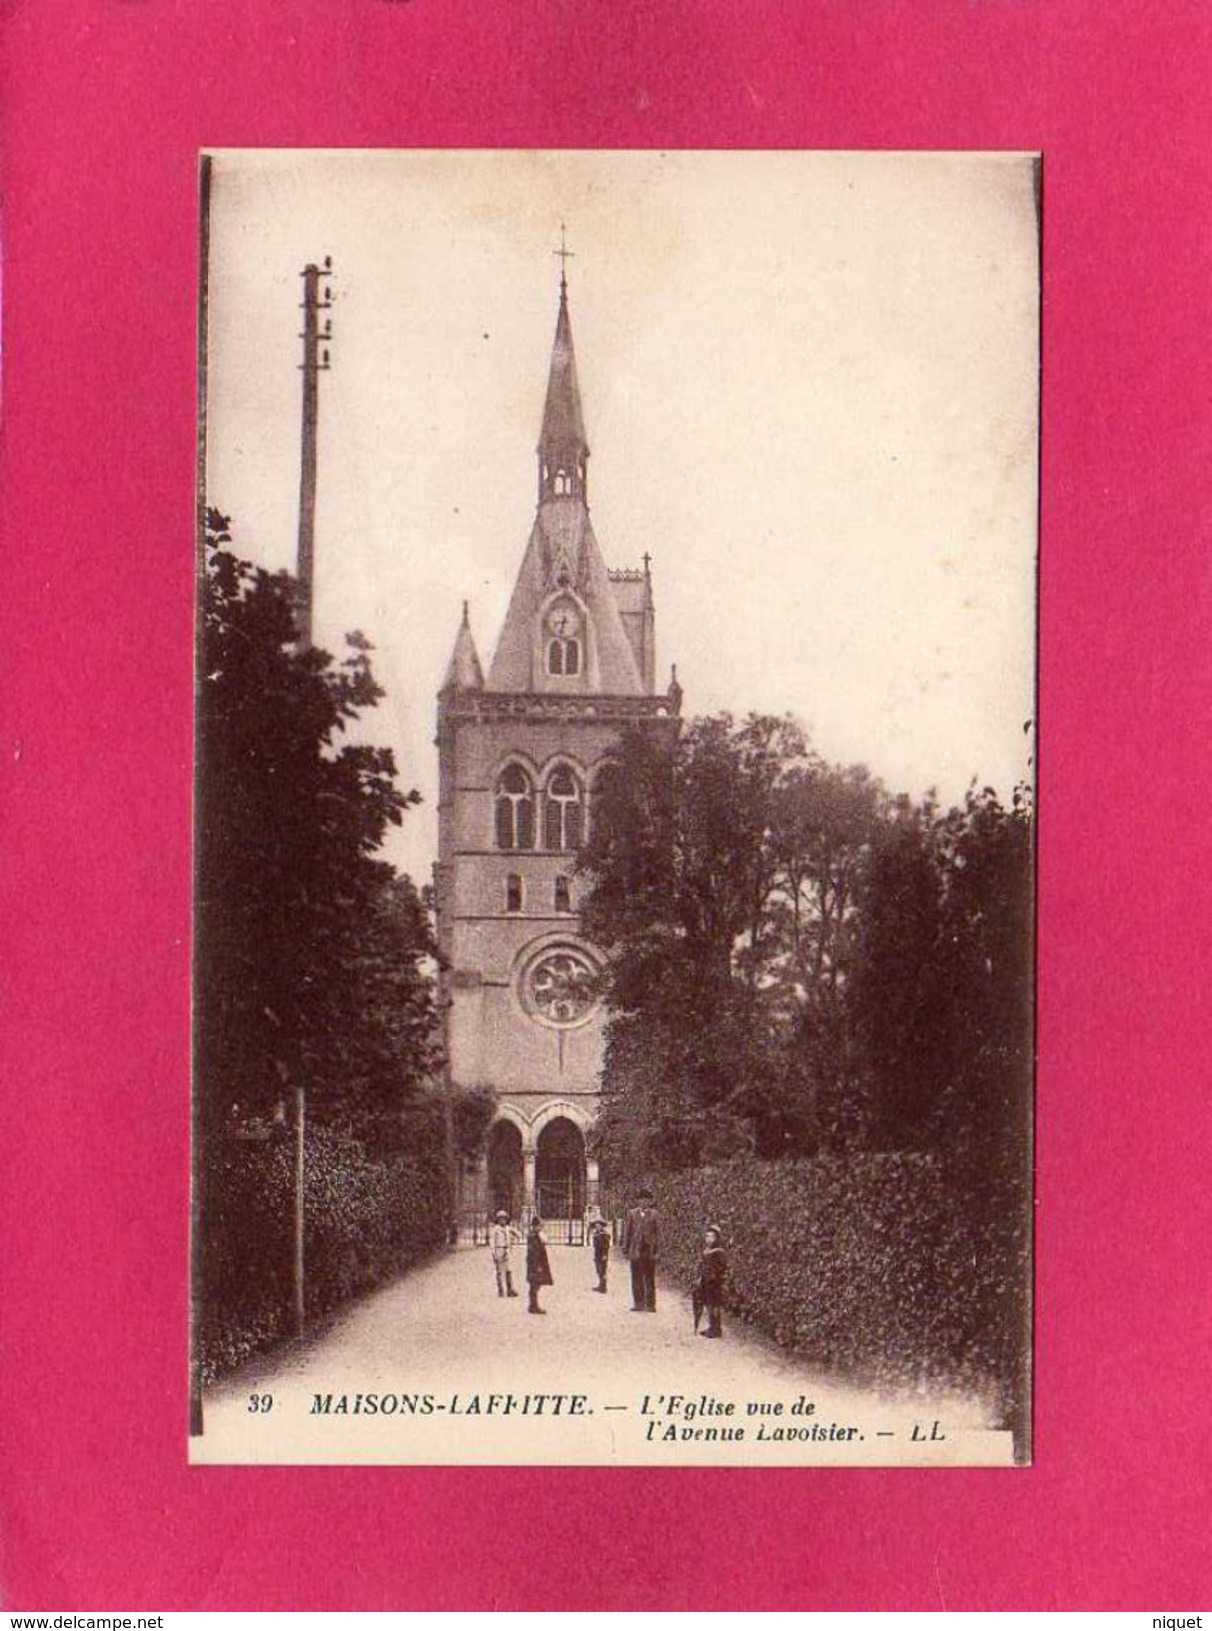 78 YVELINES, MAISONS-LAFFITTE, L'Eglise Vue De L'Avenue Lavoisier, Animée, (L. L.) - Maisons-Laffitte